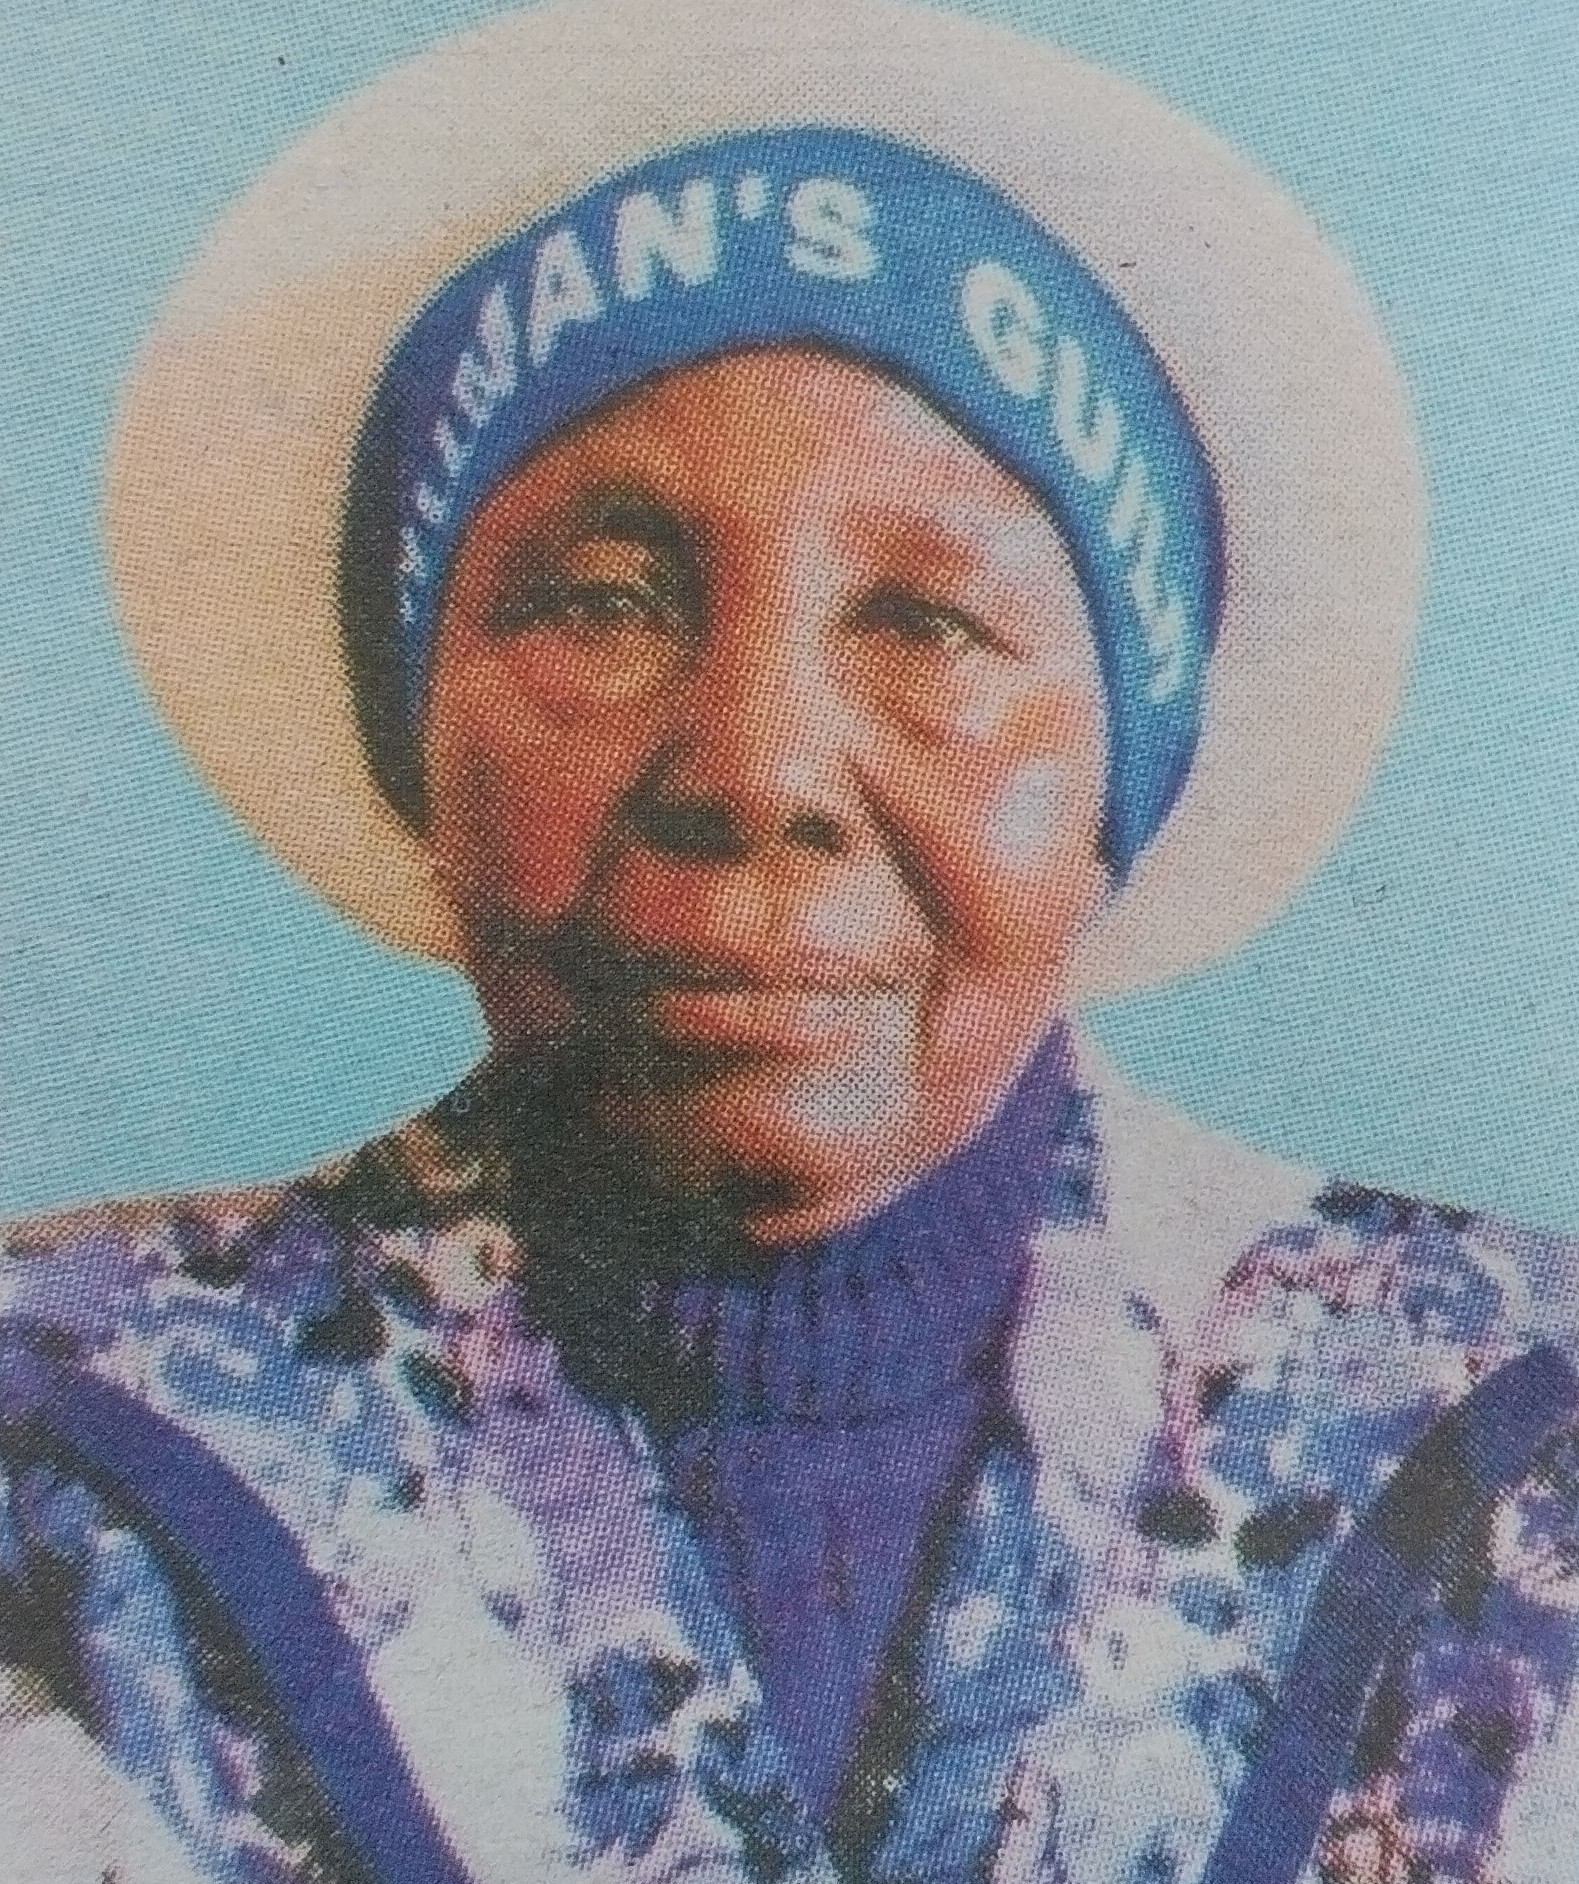 Obituary Image of Leah Wanjiku Wanjohi